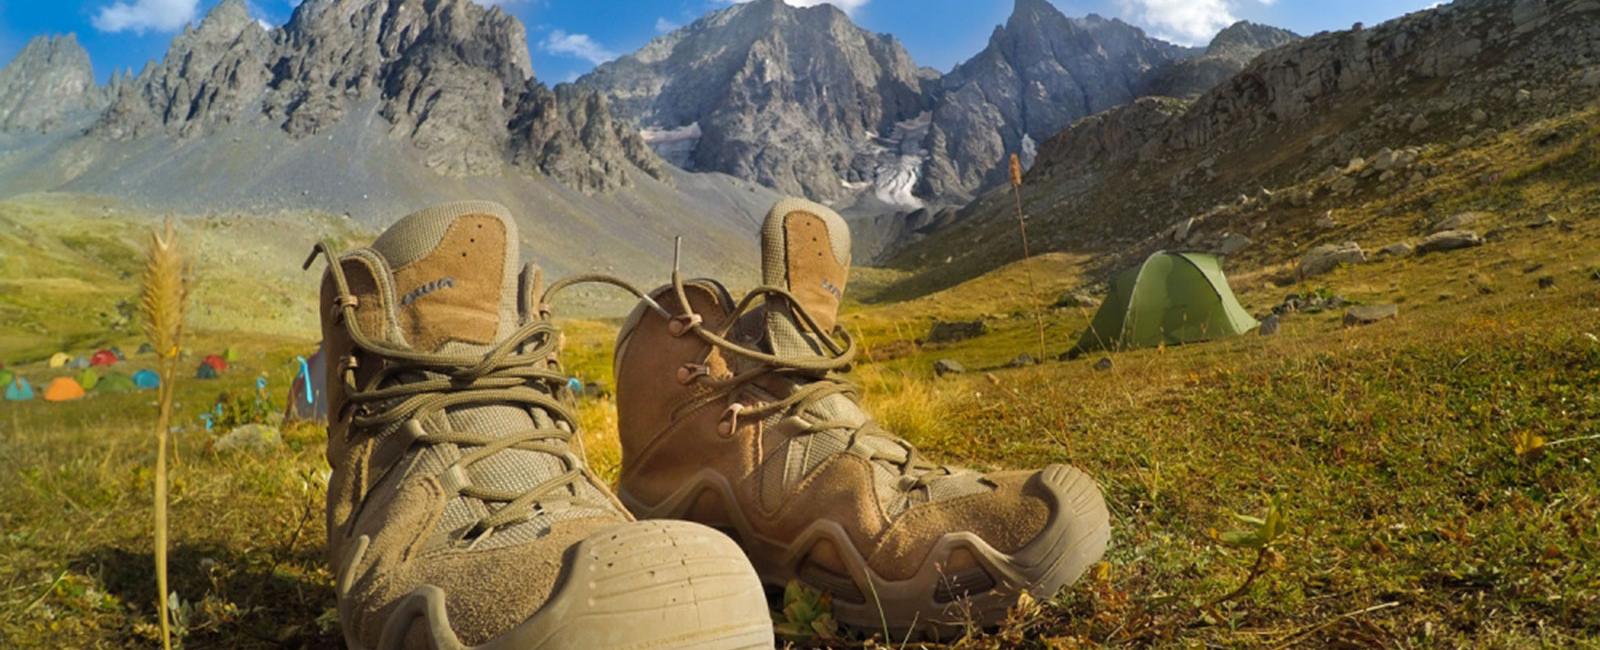 Trekking Ayakkabısı Nasıl Olmalı?